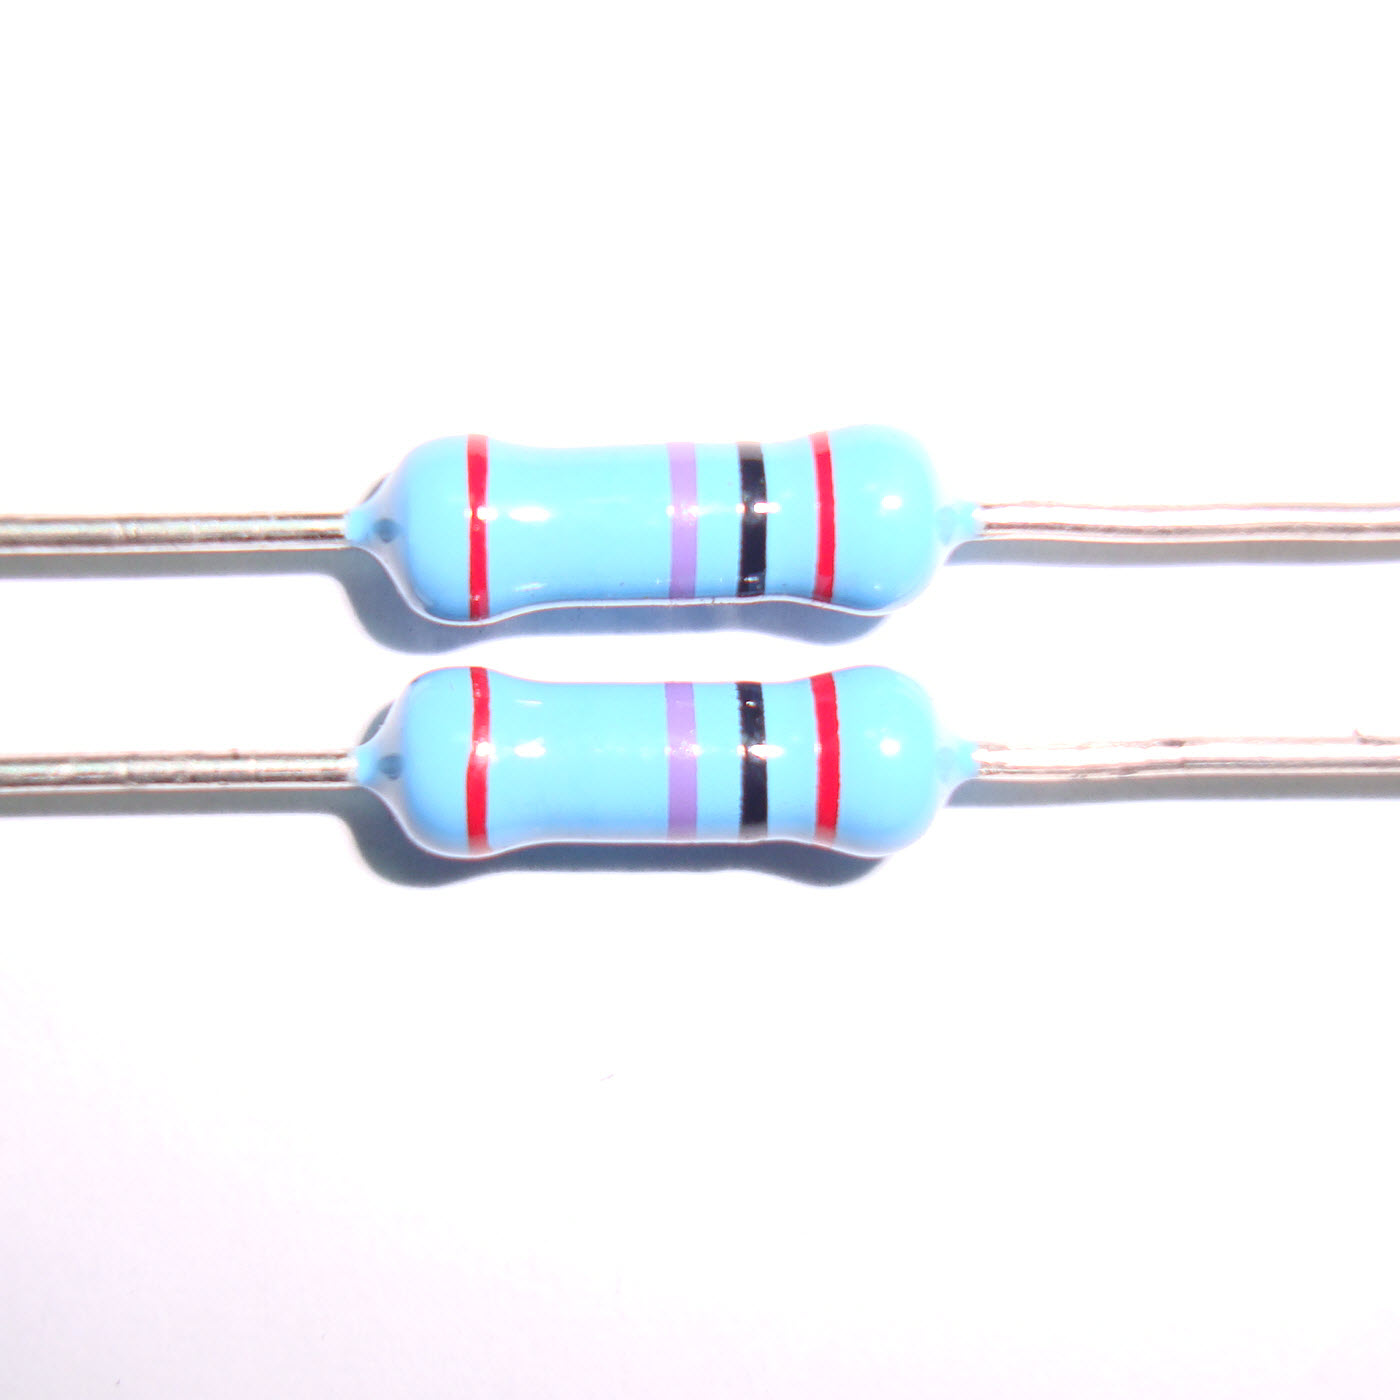 Metal Glazed Leaded Resistor (MGR)